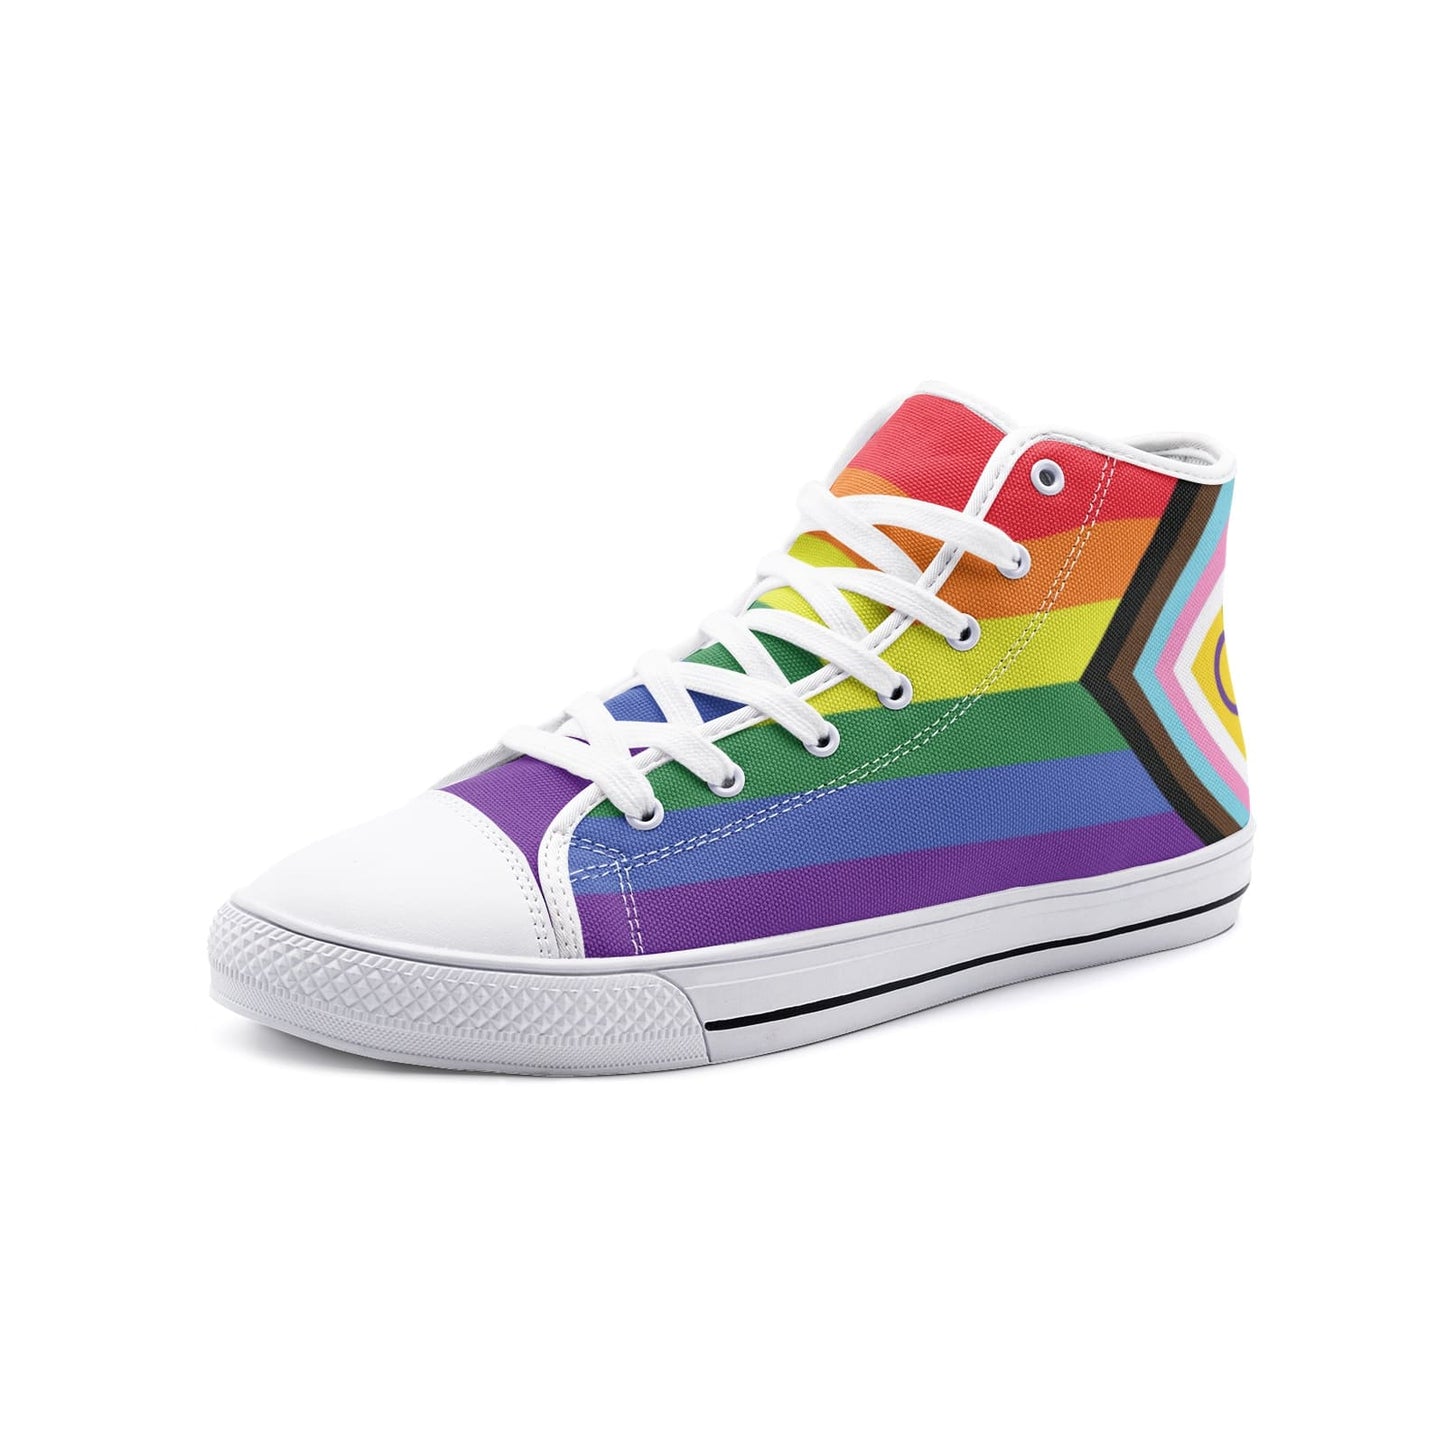 LGBTQ shoes, inclusive progressive pride sneakers, white